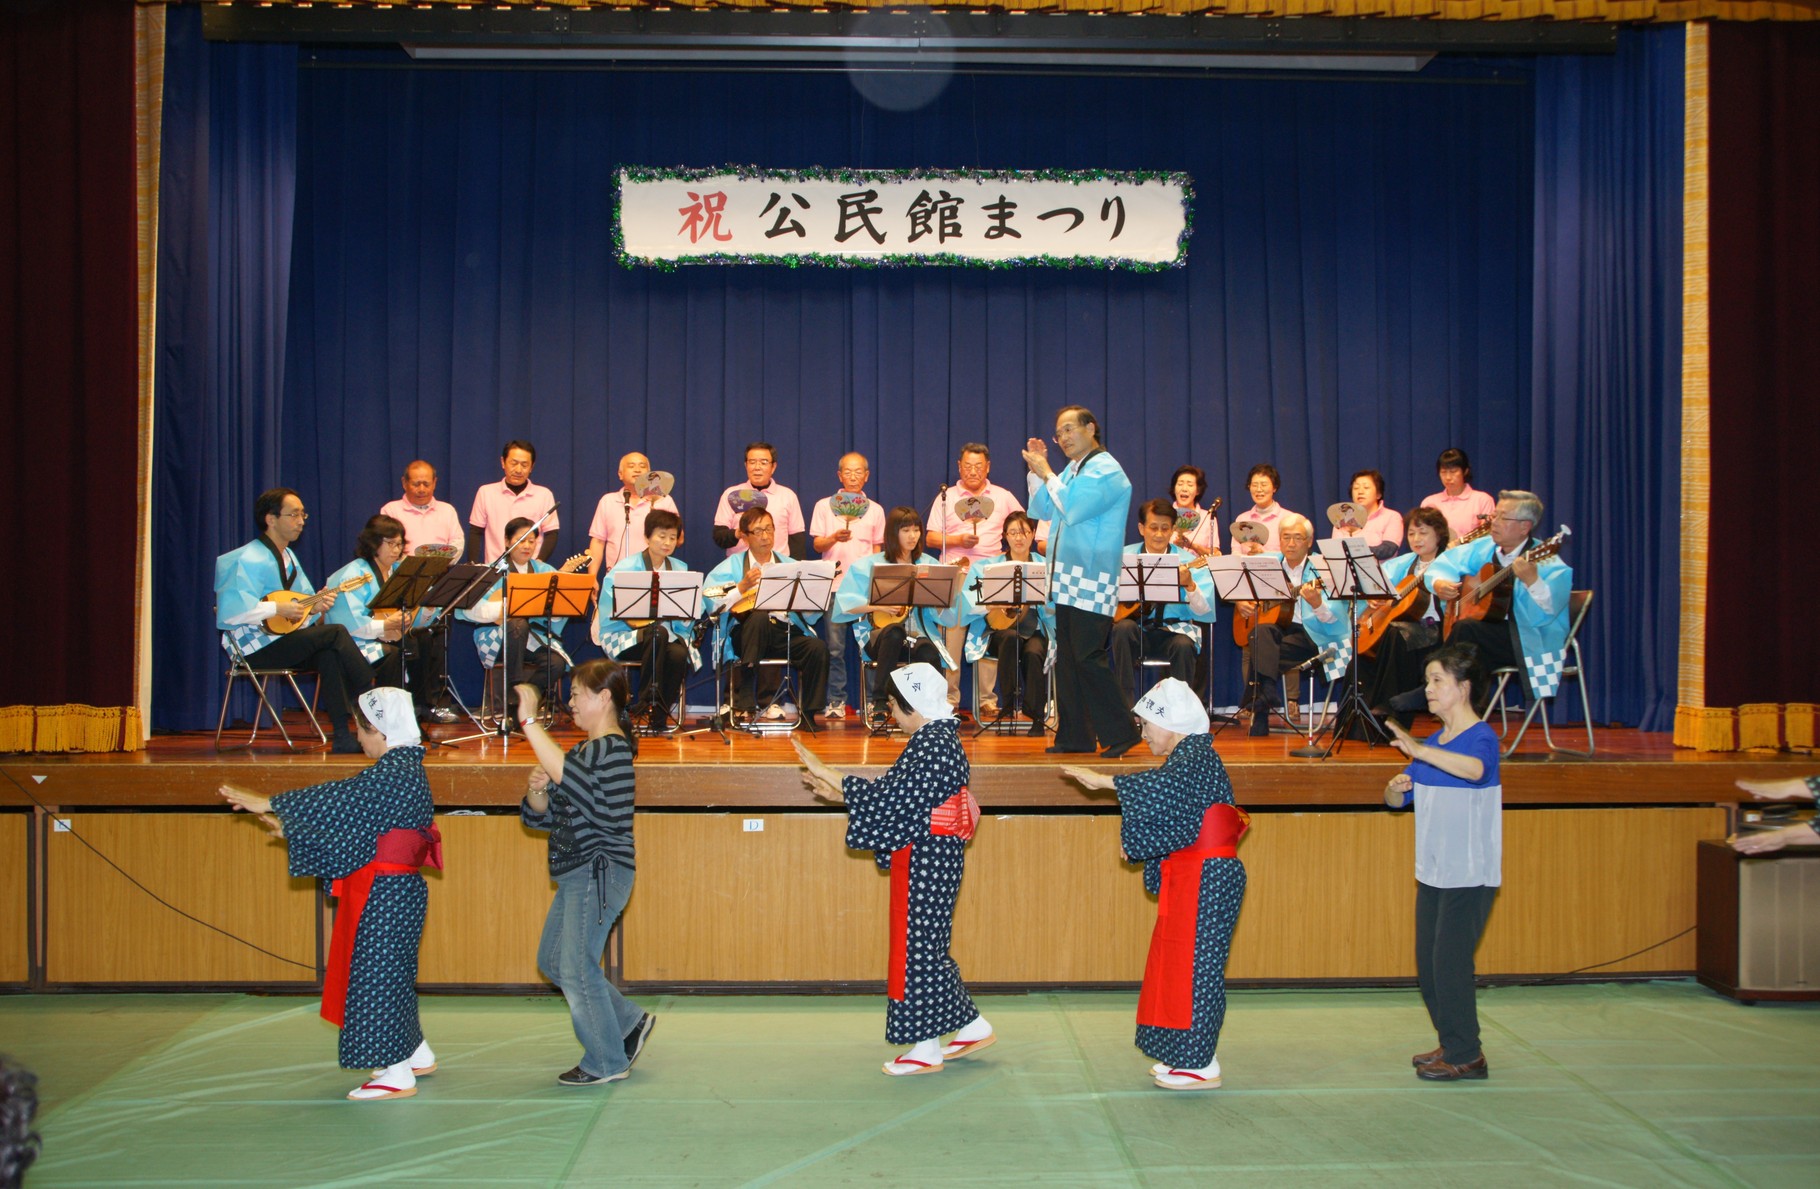 「踊り」は矢野町女性会と向井寿恵亮会の有志の方々のご協力を頂いています。